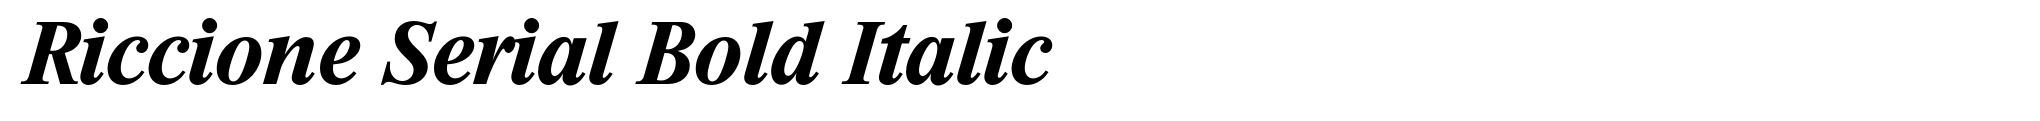 Riccione Serial Bold Italic image